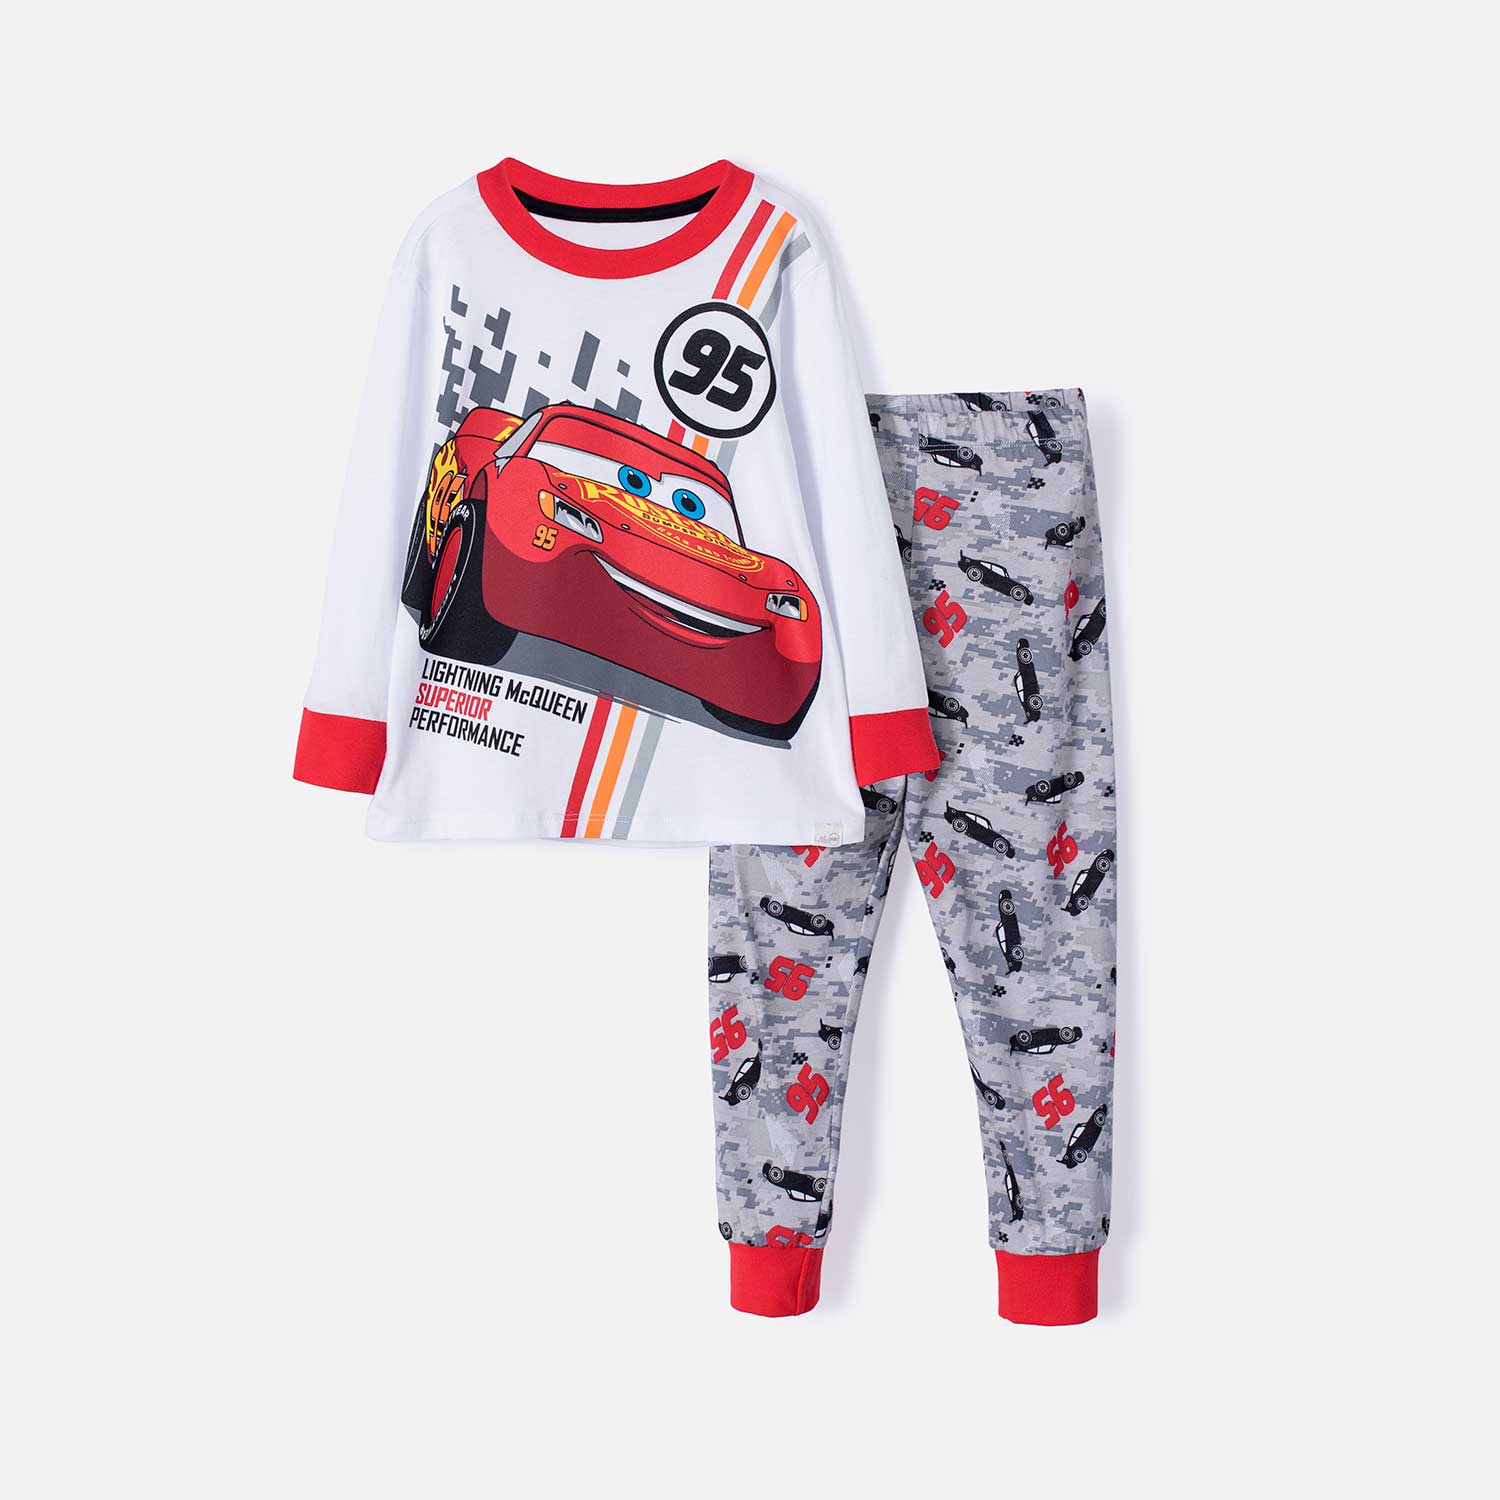 Pijama Cars multicolor manga larga/pantalón largo para niño - Tienda